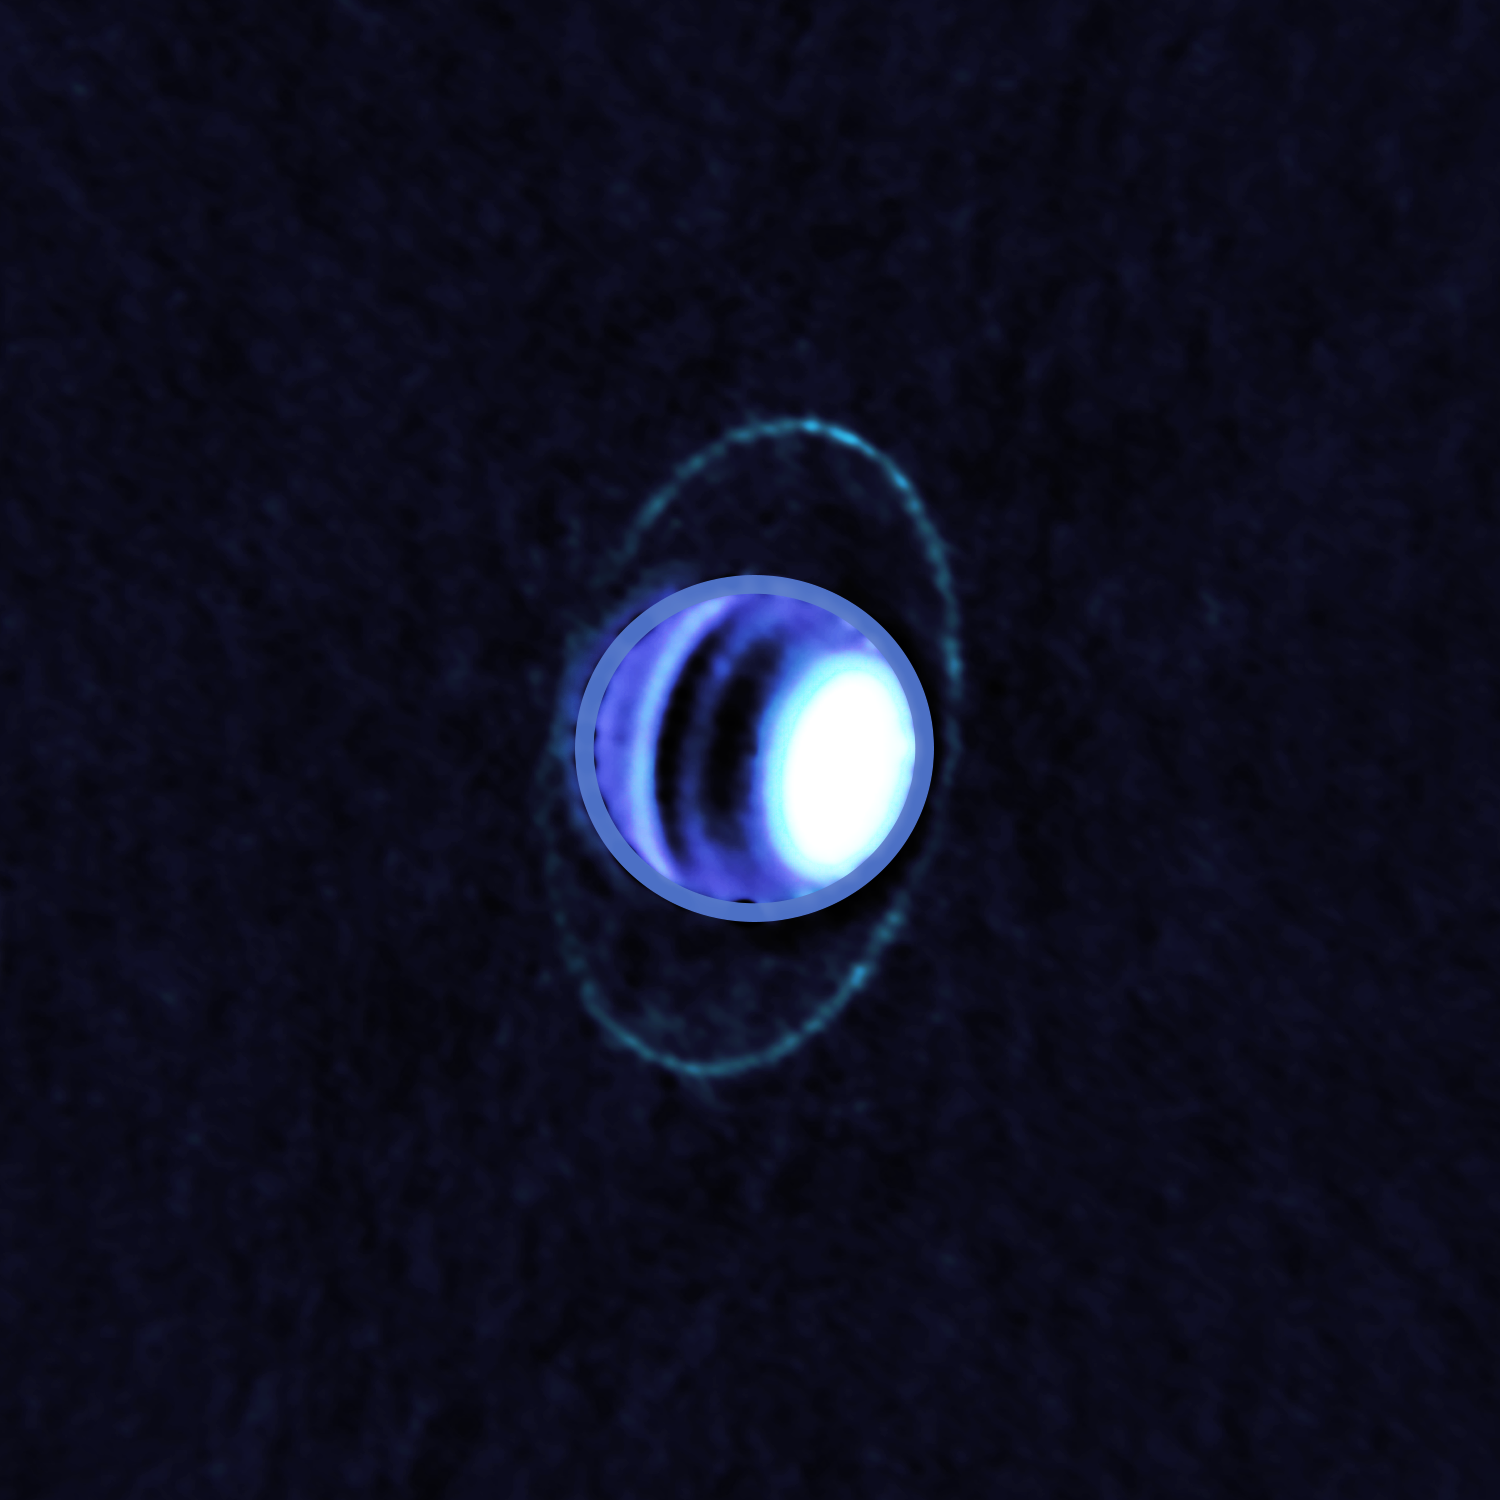 <p>Imagen compuesta de la atmósfera y los anillos de Urano tomada con el radiotelescopio ALMA en diciembre de 2017. La imagen muestra por primera vez la emisión térmica, o temperatura, de los anillos de Urano, permitiendo a los astrónomos determinarla en unos fríos 77º Kelvin (-196,15℃). Bandas oscuras en la atmósfera de Urano delatan la presencia de moléculas que absorben las ondas de radio, en particular gas de Sulfuro de Hidrógeno (H2S); mientras que las zonas más brillantes como el polo norte contienen muy pocas de estas moléculas. Crédito: ALMA (ESO/NAOJ/NRAO); E. Molter and I. de Pater.</p>
